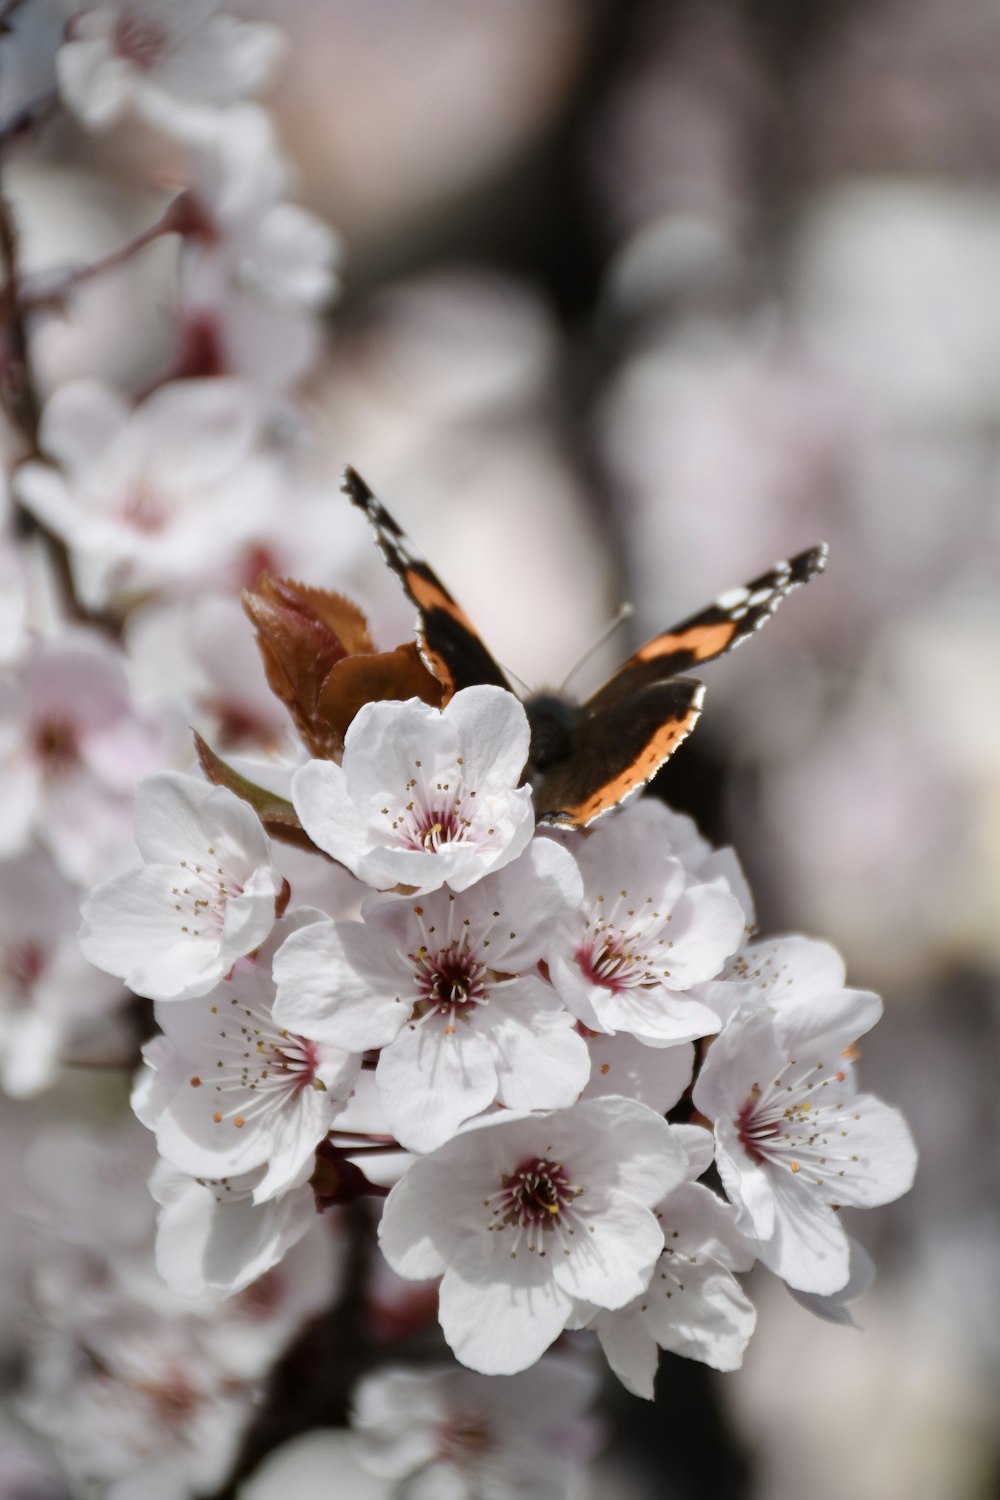 un papillon assis au sommet d’une fleur blanche